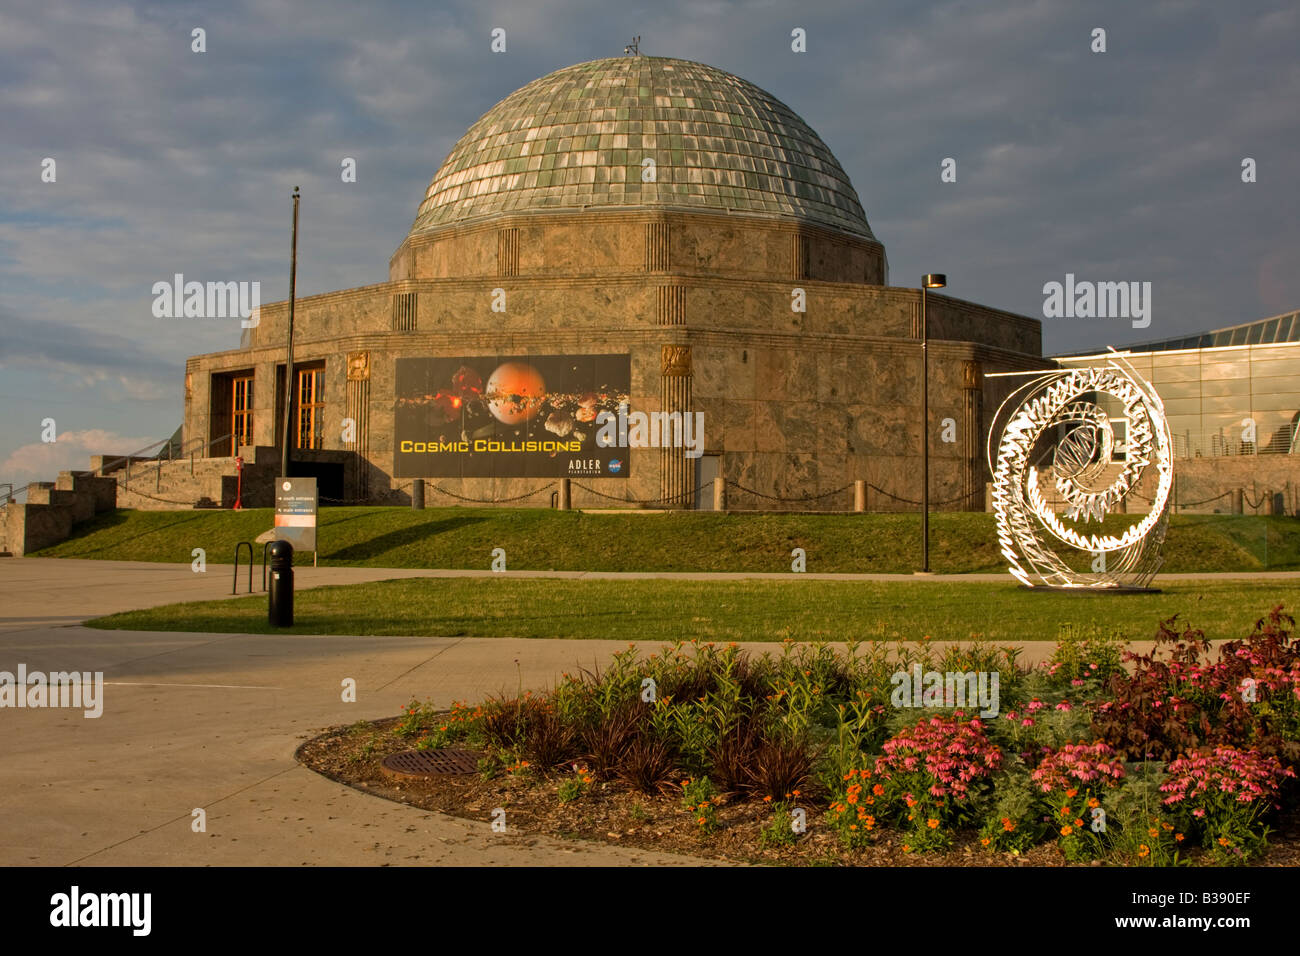 Chicago, Illinois. Adler Planetarium. Stock Photo